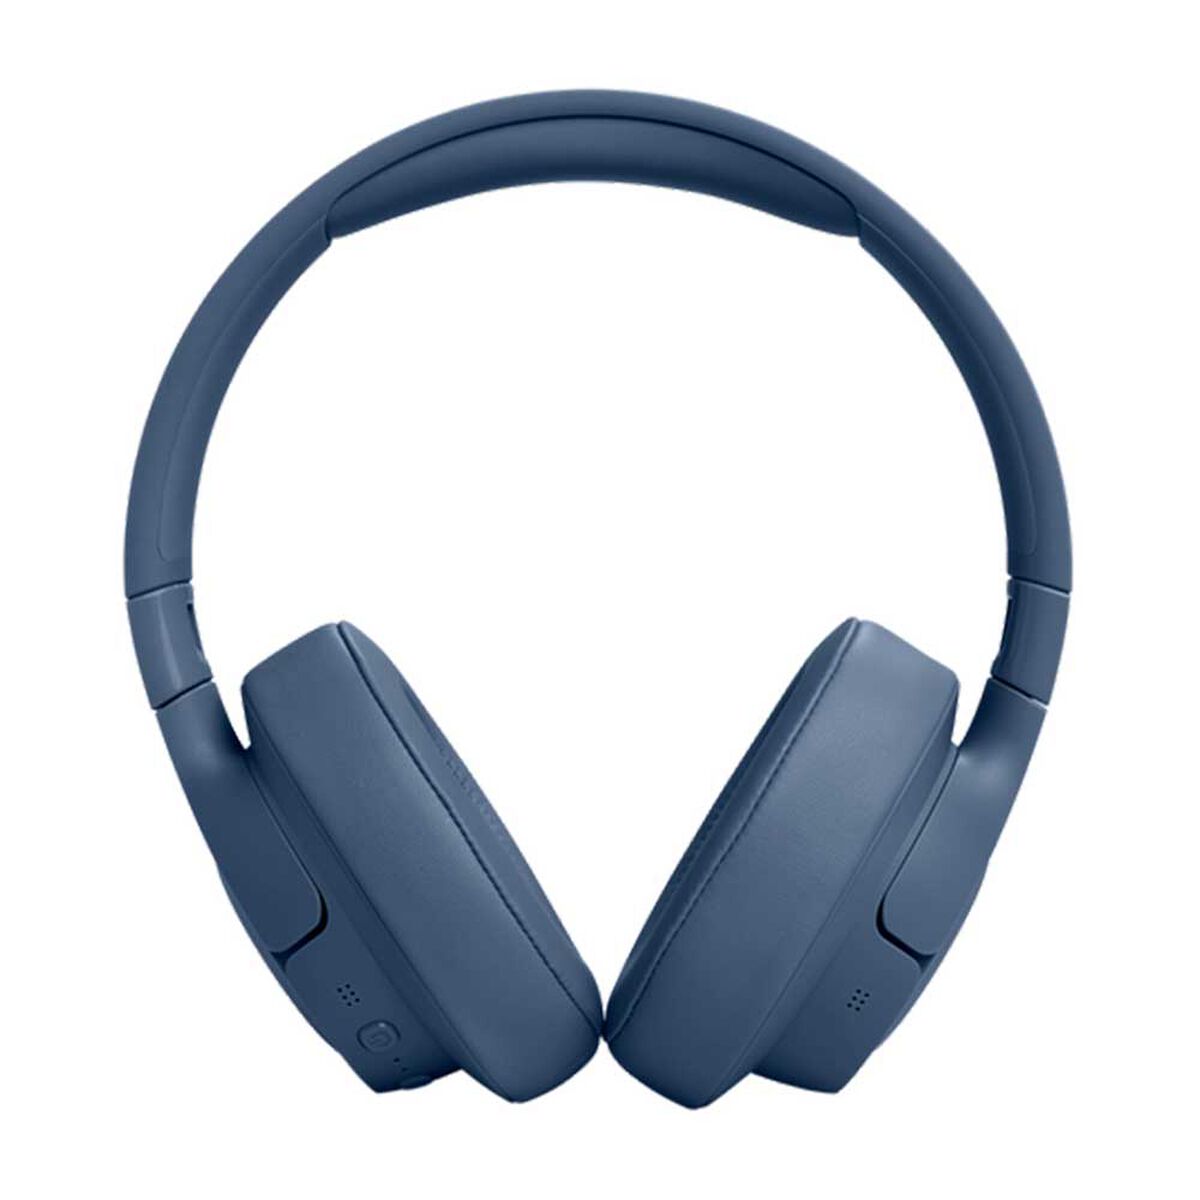 Audífonos Bluetooth Over Ear JBL Tune 770 NC Azul